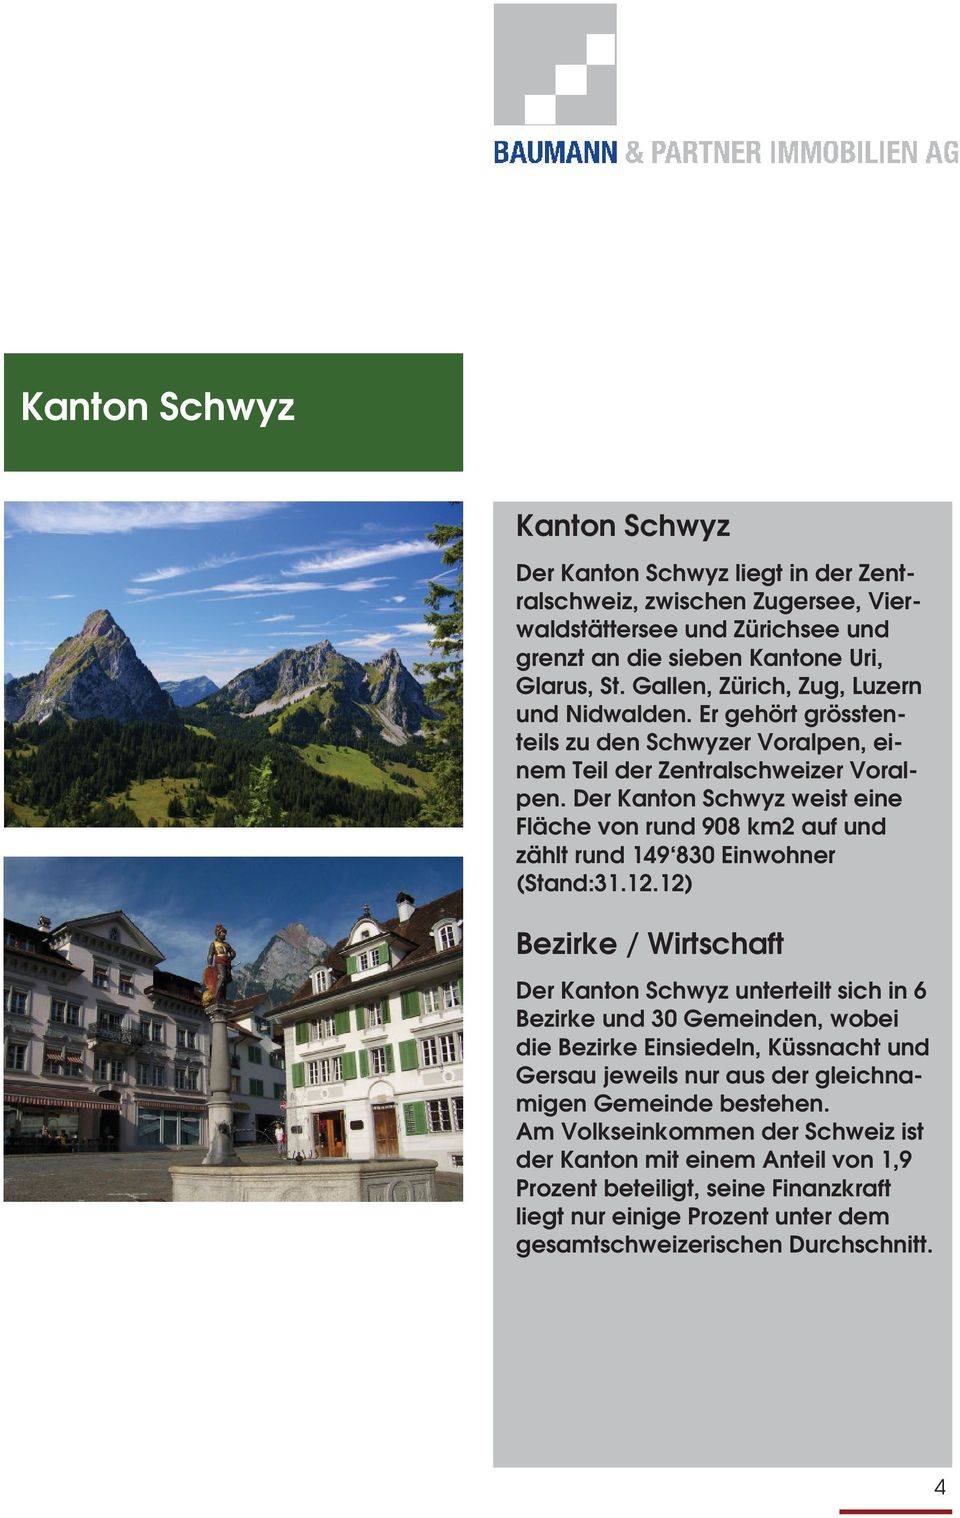 Der Kanton Schwyz weist eine Fläche von rund 908 km2 auf und zählt rund 149 830 Einwohner (Stand:31.12.